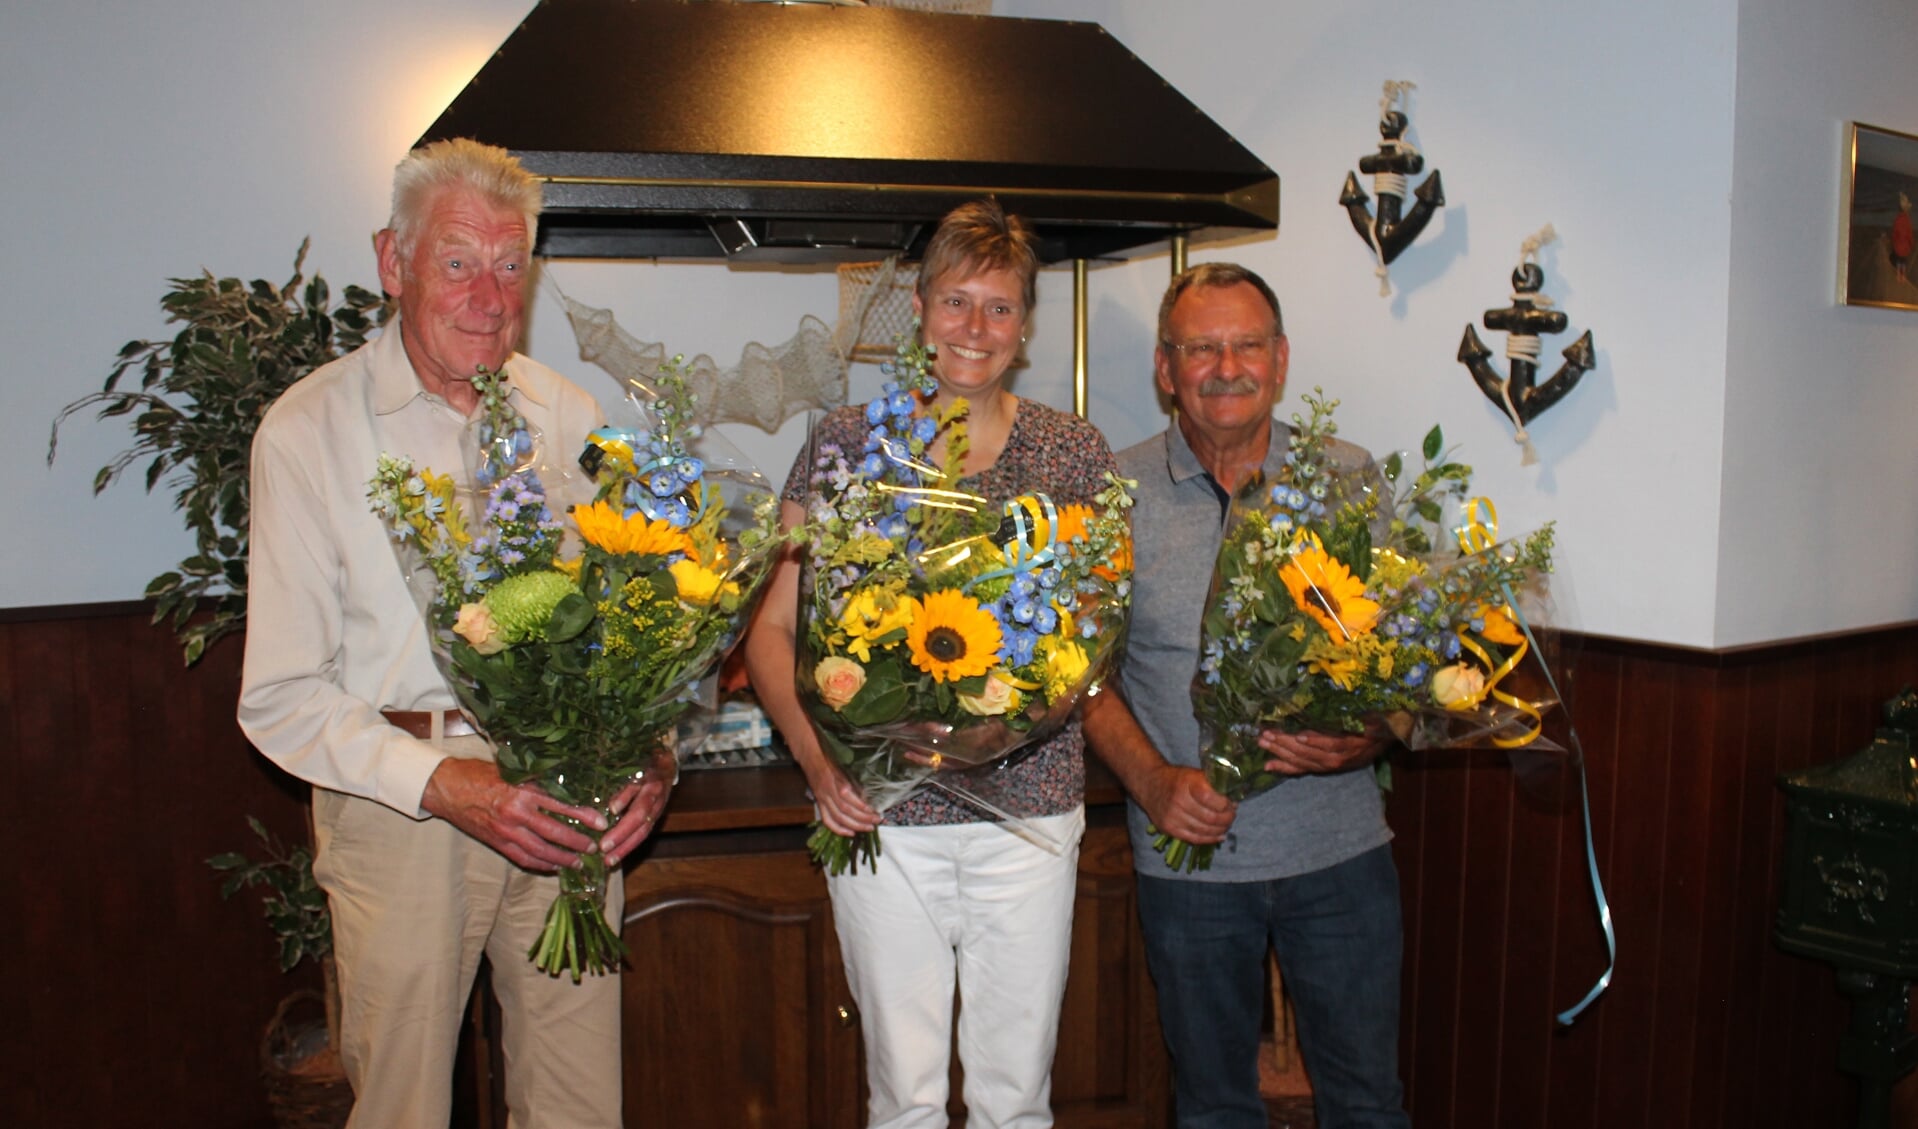 Jubilarissen met bloemen. Van links baar rechts: Frits Mennen, Ester Ruisch, Abel Hoegée.